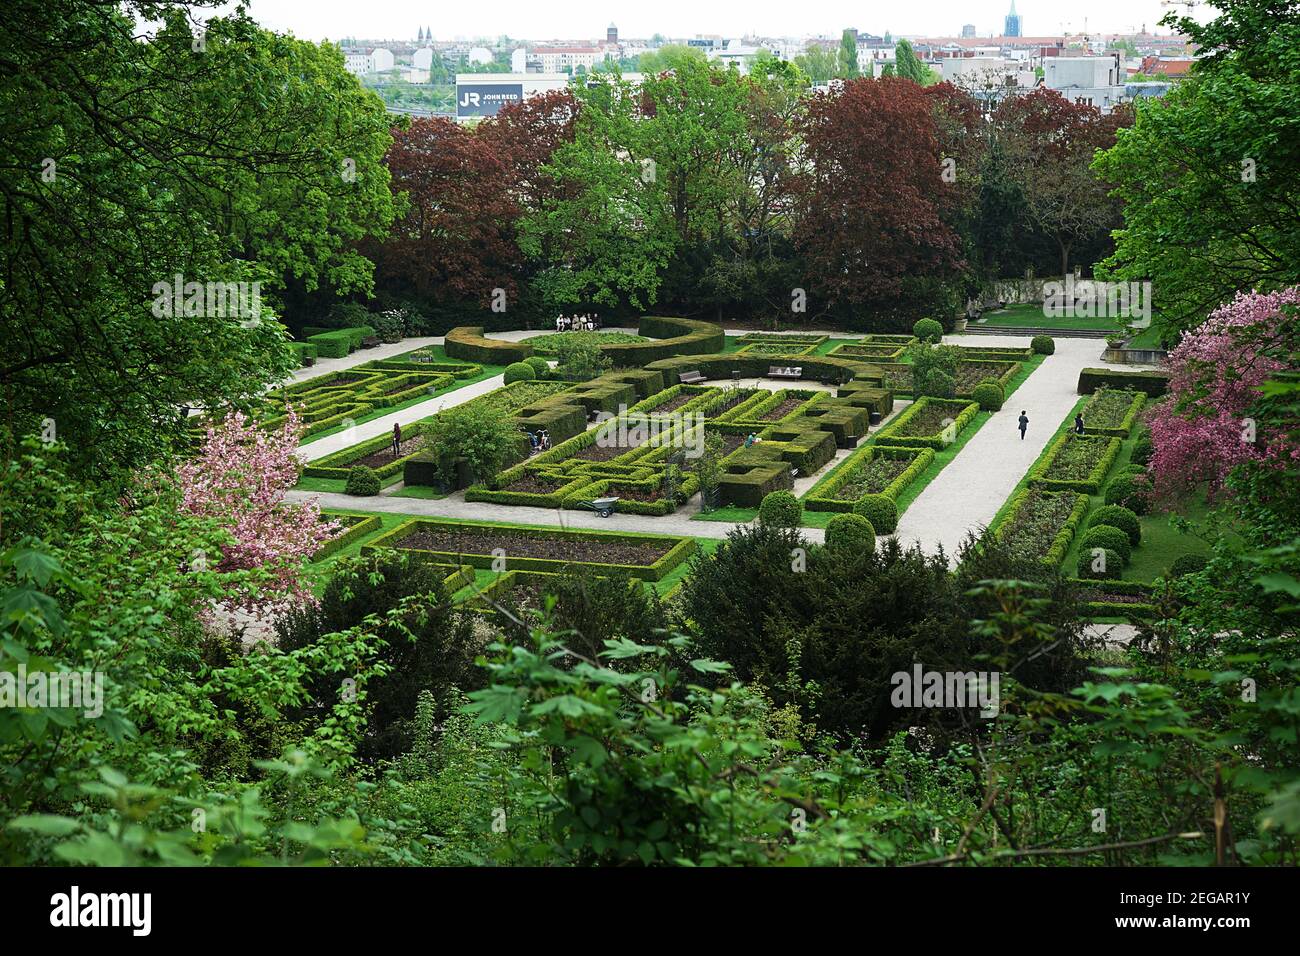 Rose Garden in Humboldthain park, Berlin Stock Photo - Alamy